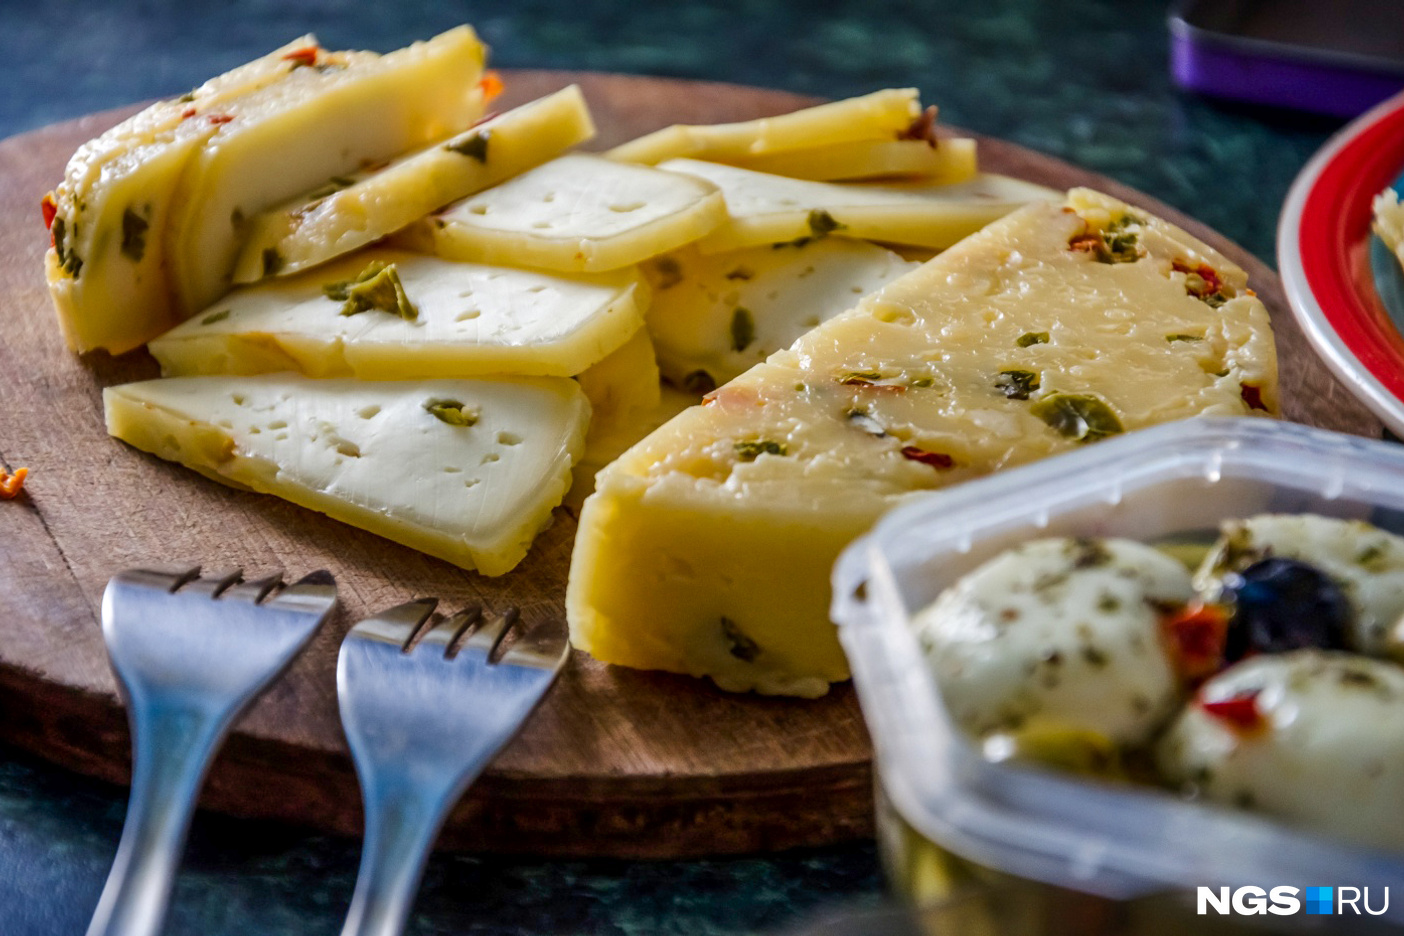 Почему Пошехонский сыр называется именно так? Узнайте историю происхождения этого вкусного сыра